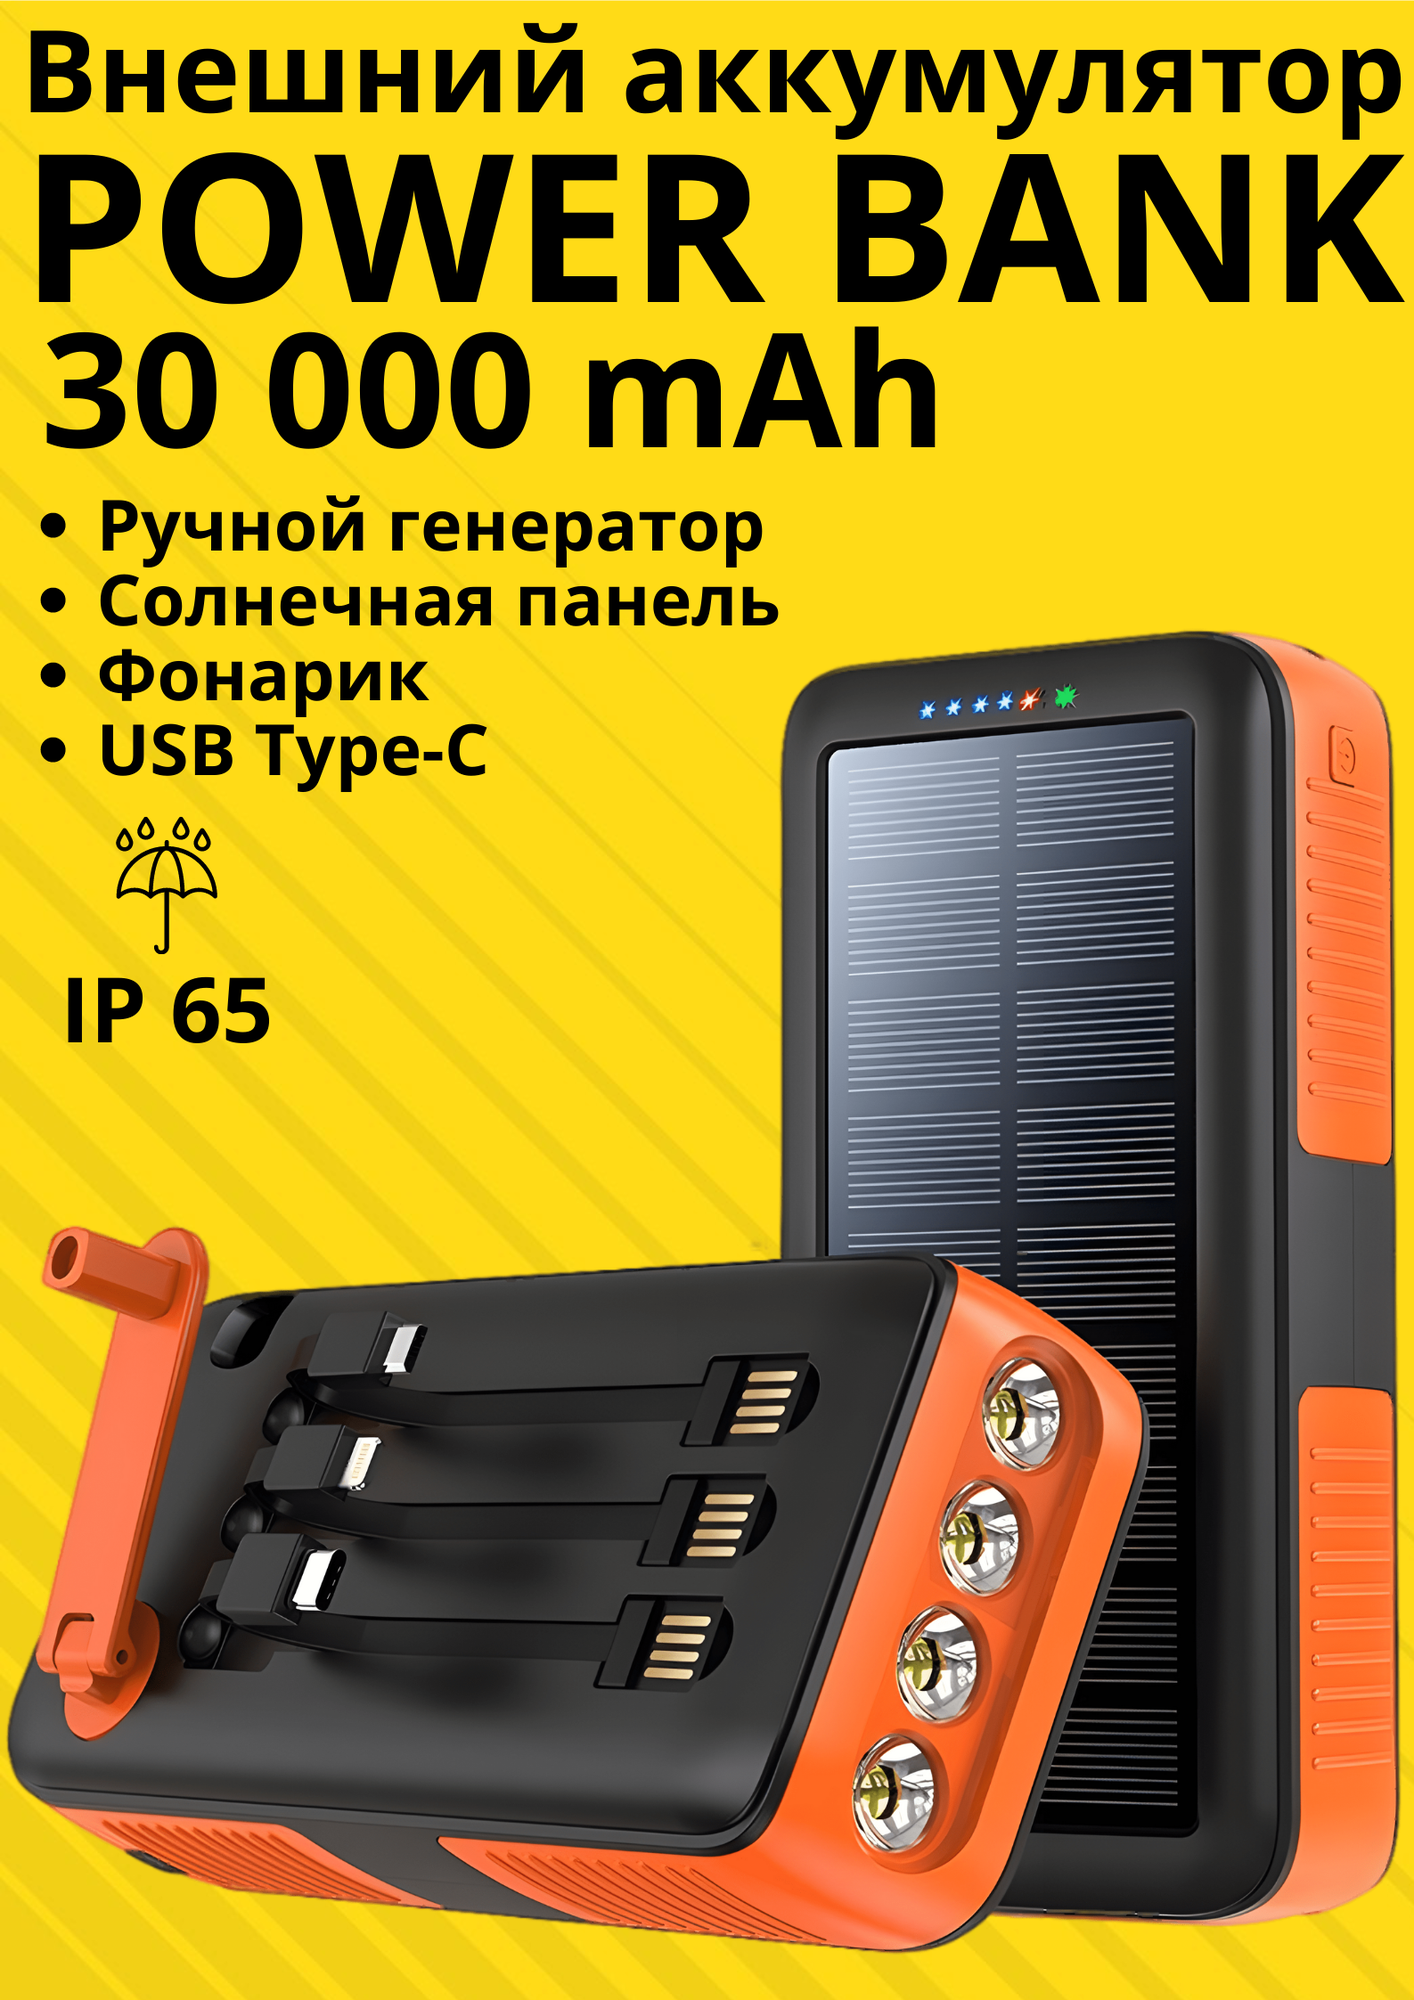 Внешний аккумулятор 30000 mAh Power bank с фонариком, солнечной панелью и ручным генератором, оранжевый, переходники Tipe-C, micro USB, Lighting